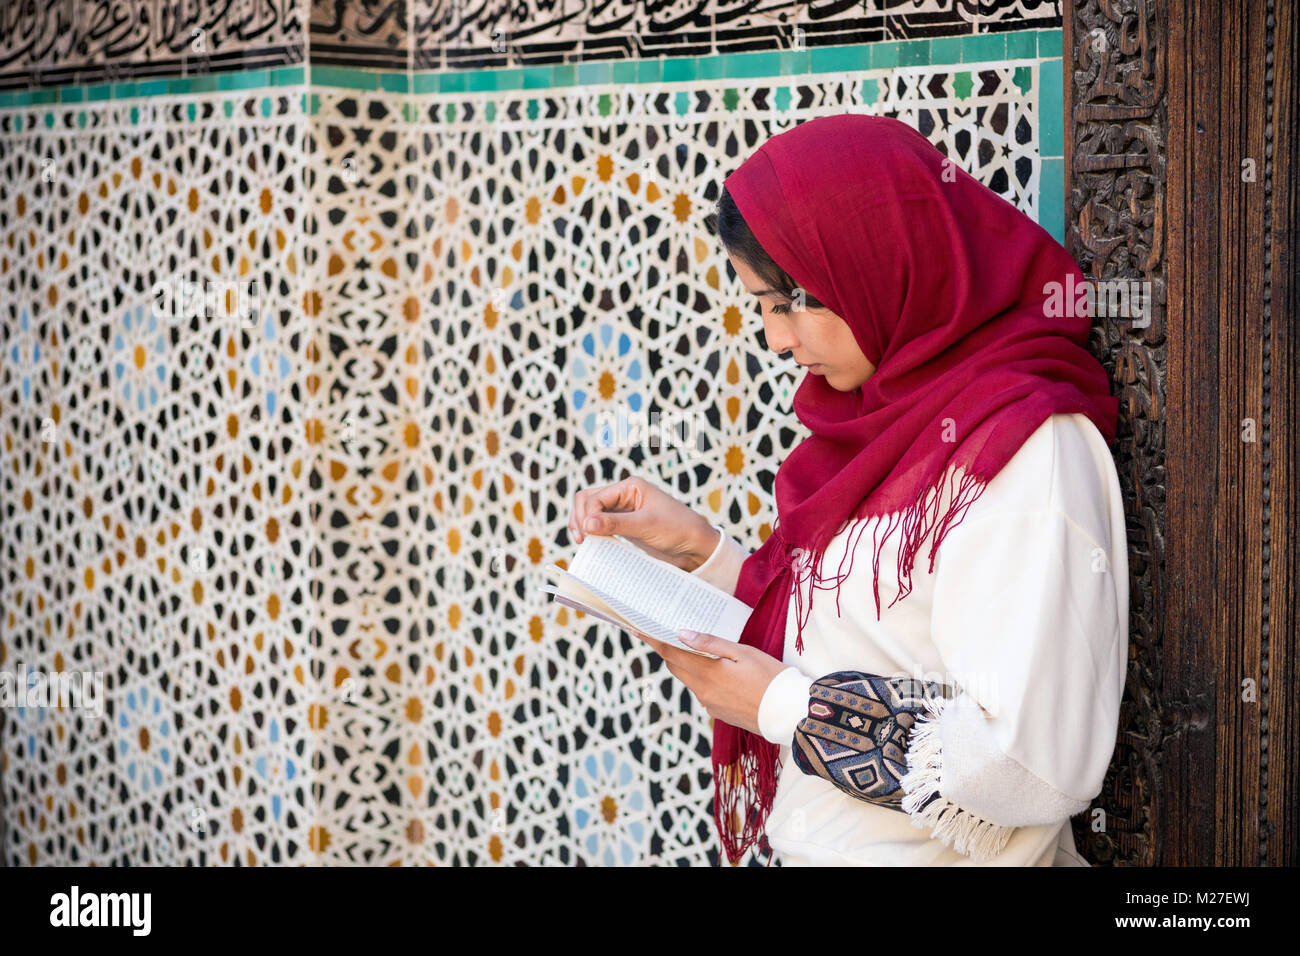 Arabische Frau in traditioneller Kleidung mit roten Kopftuch auf dem Kopf ein Buch lesen Stockfoto